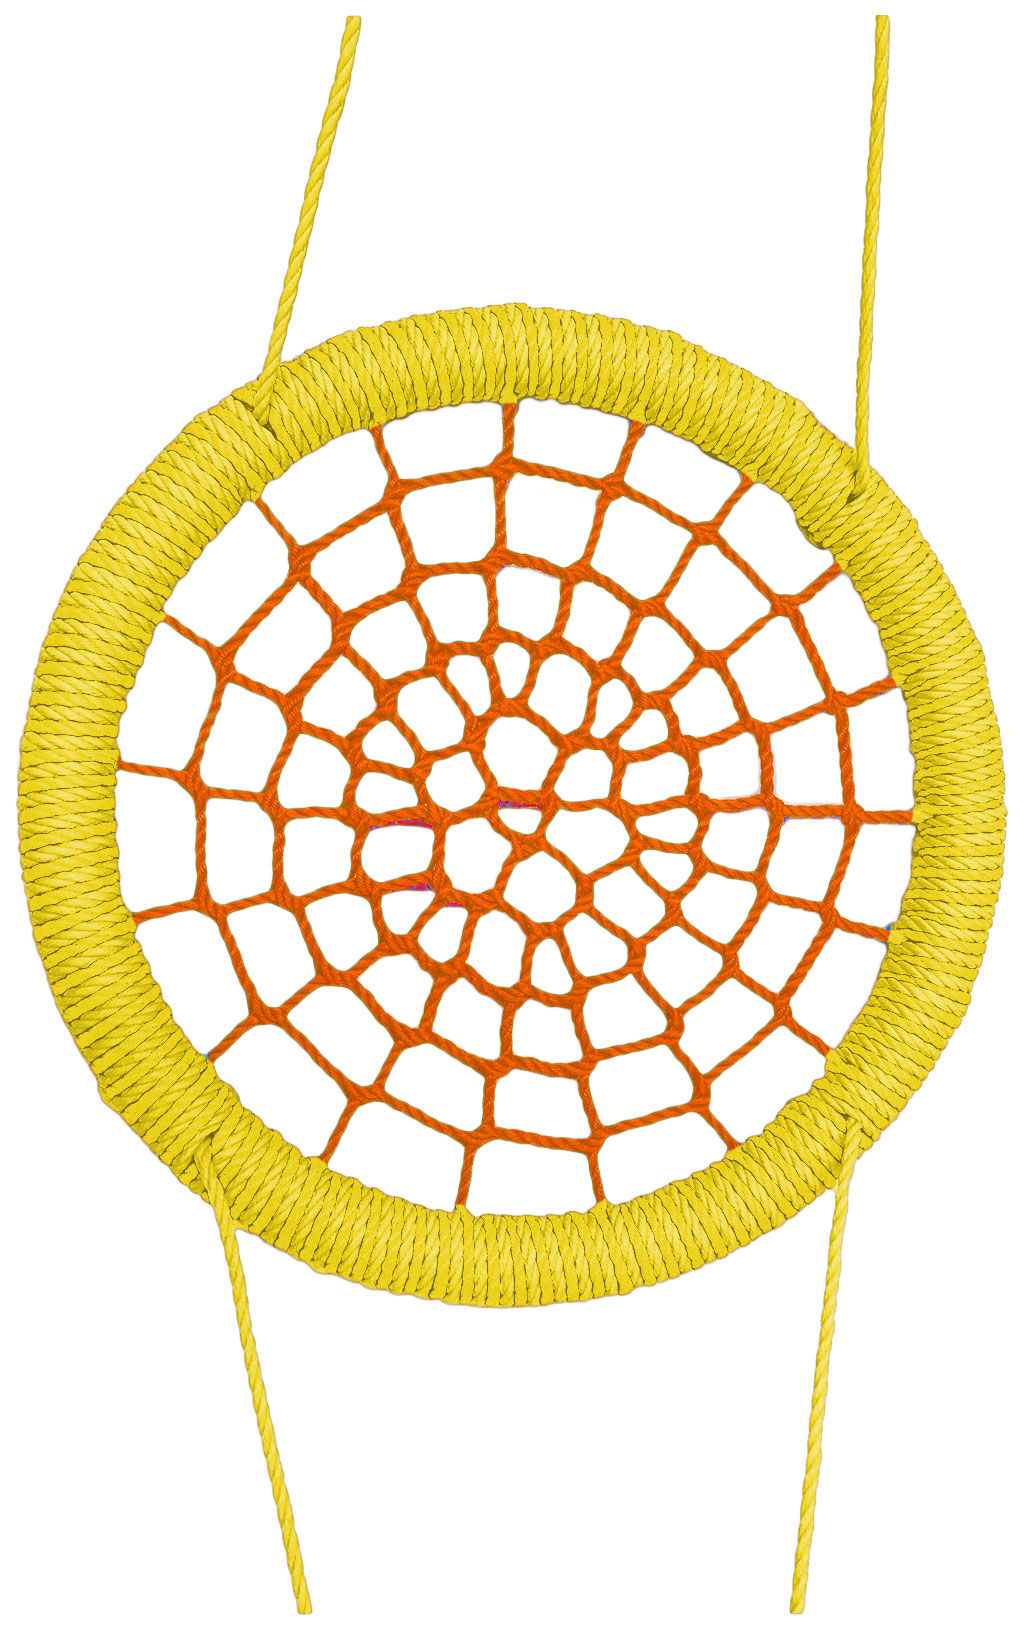 Качели-гнездо подвесные STORK NEST Премиум d 120 см Обод Желтый толщ. нити 15 мм оранжевый